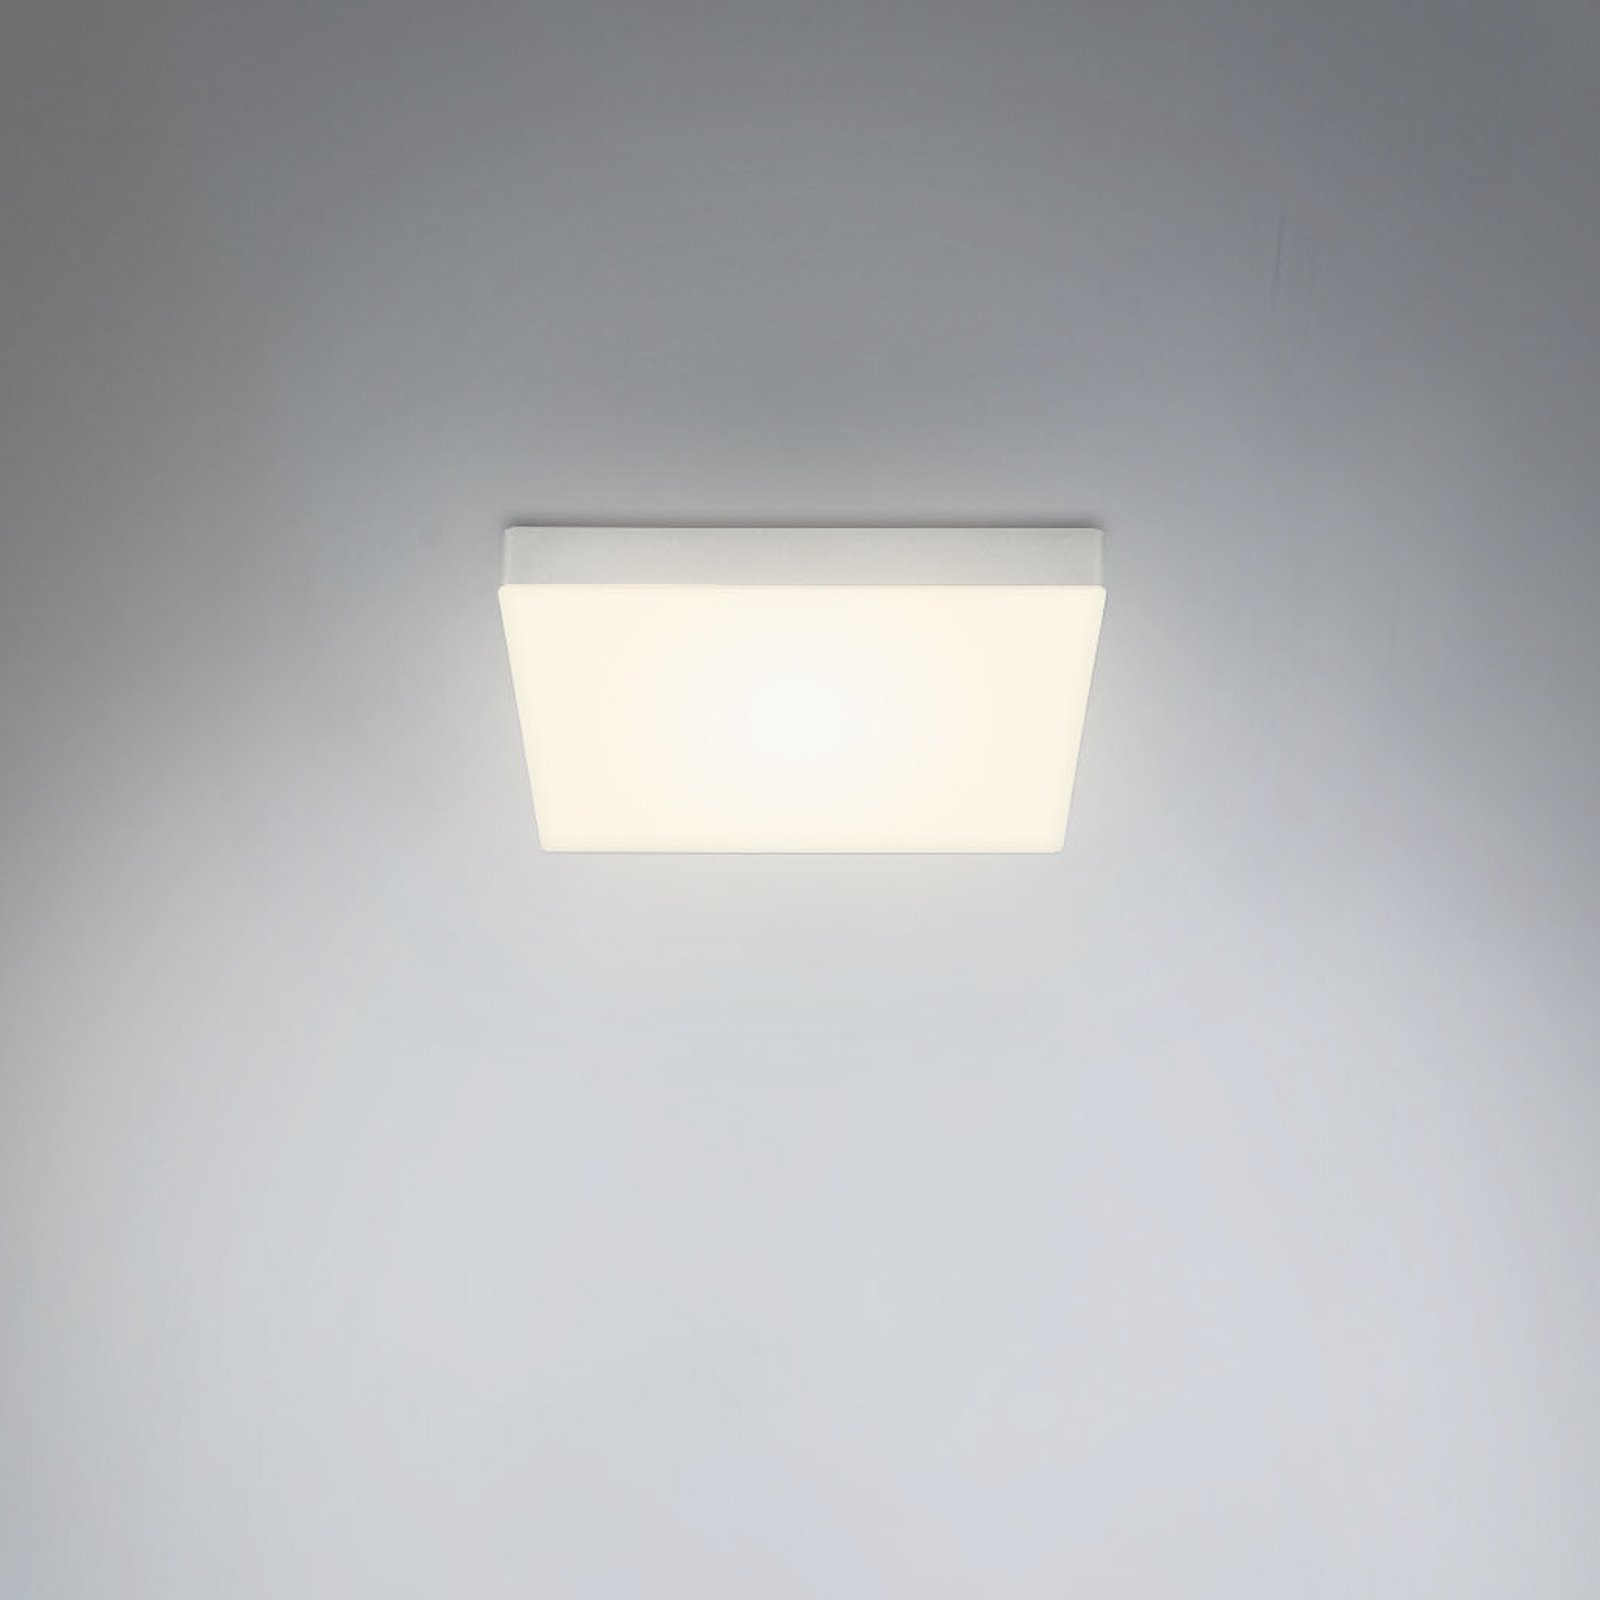 Stropní svítidlo LED Flame, 21,2 x 21,2 cm, stříbrné